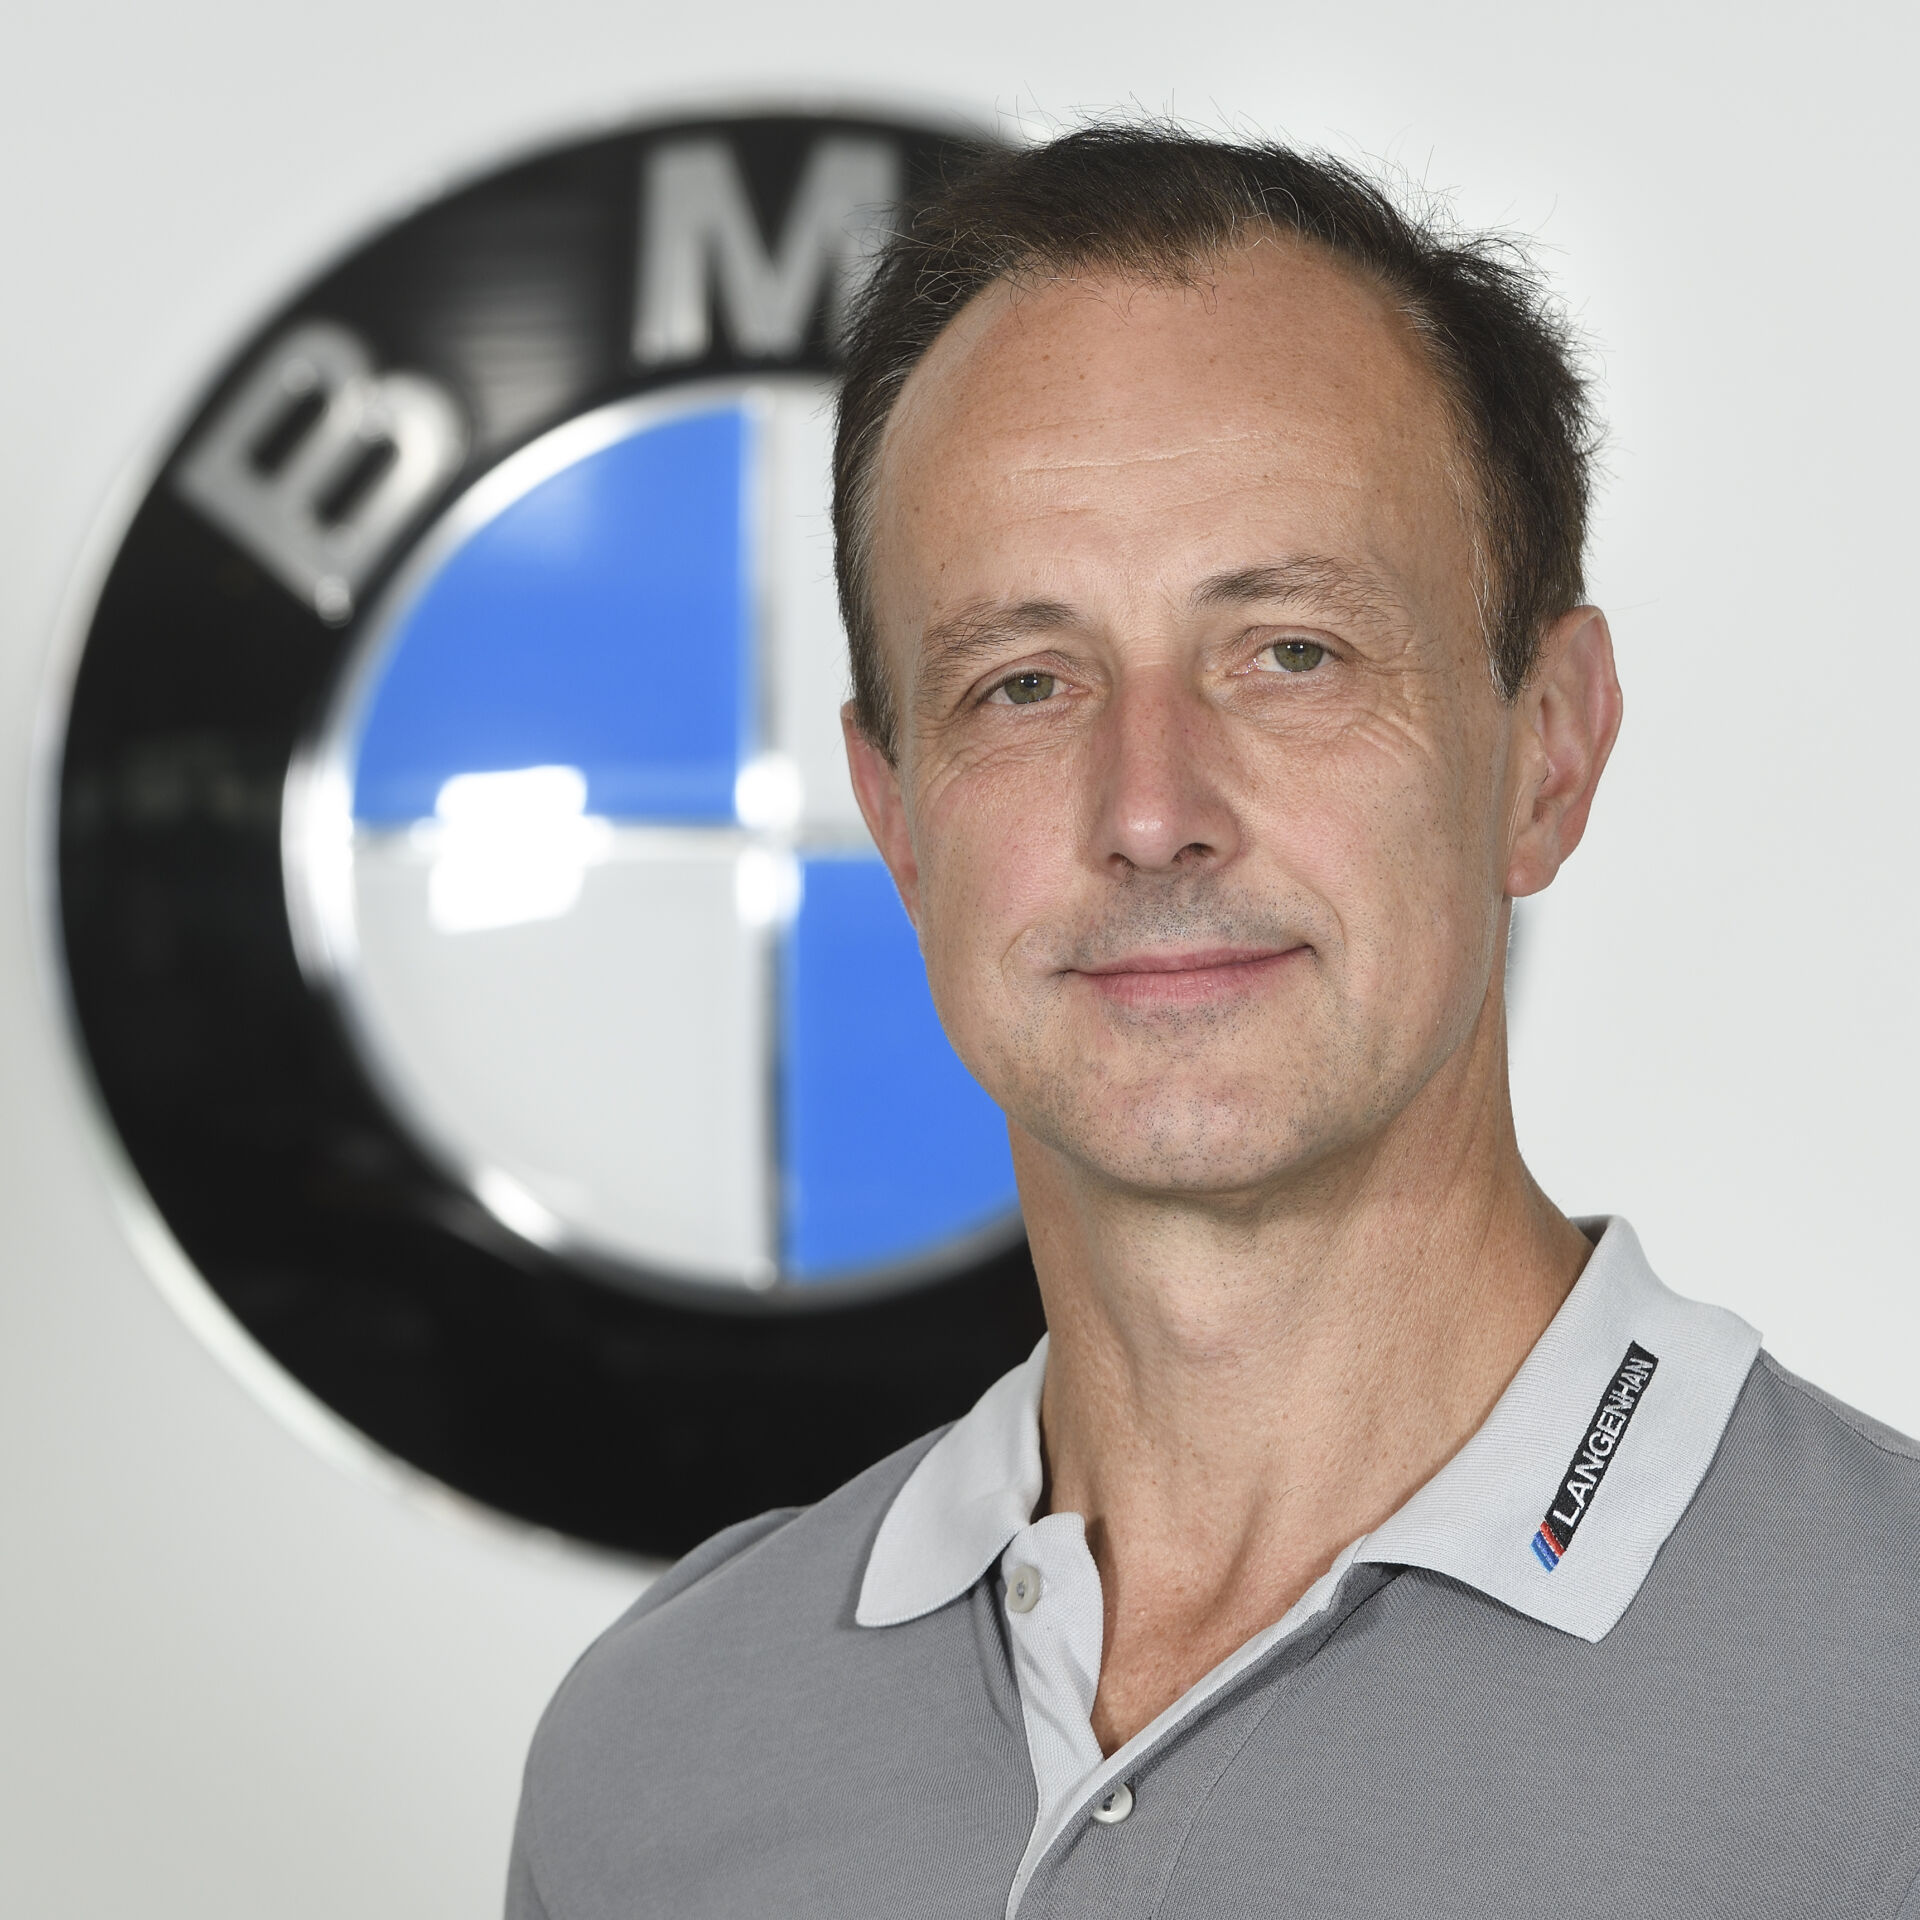 Gerhard Wehr, Kfz-Mechatroniker, Werkstatt, Unser Team in Mühlhausen, BMW Autohaus Mühlhausen​